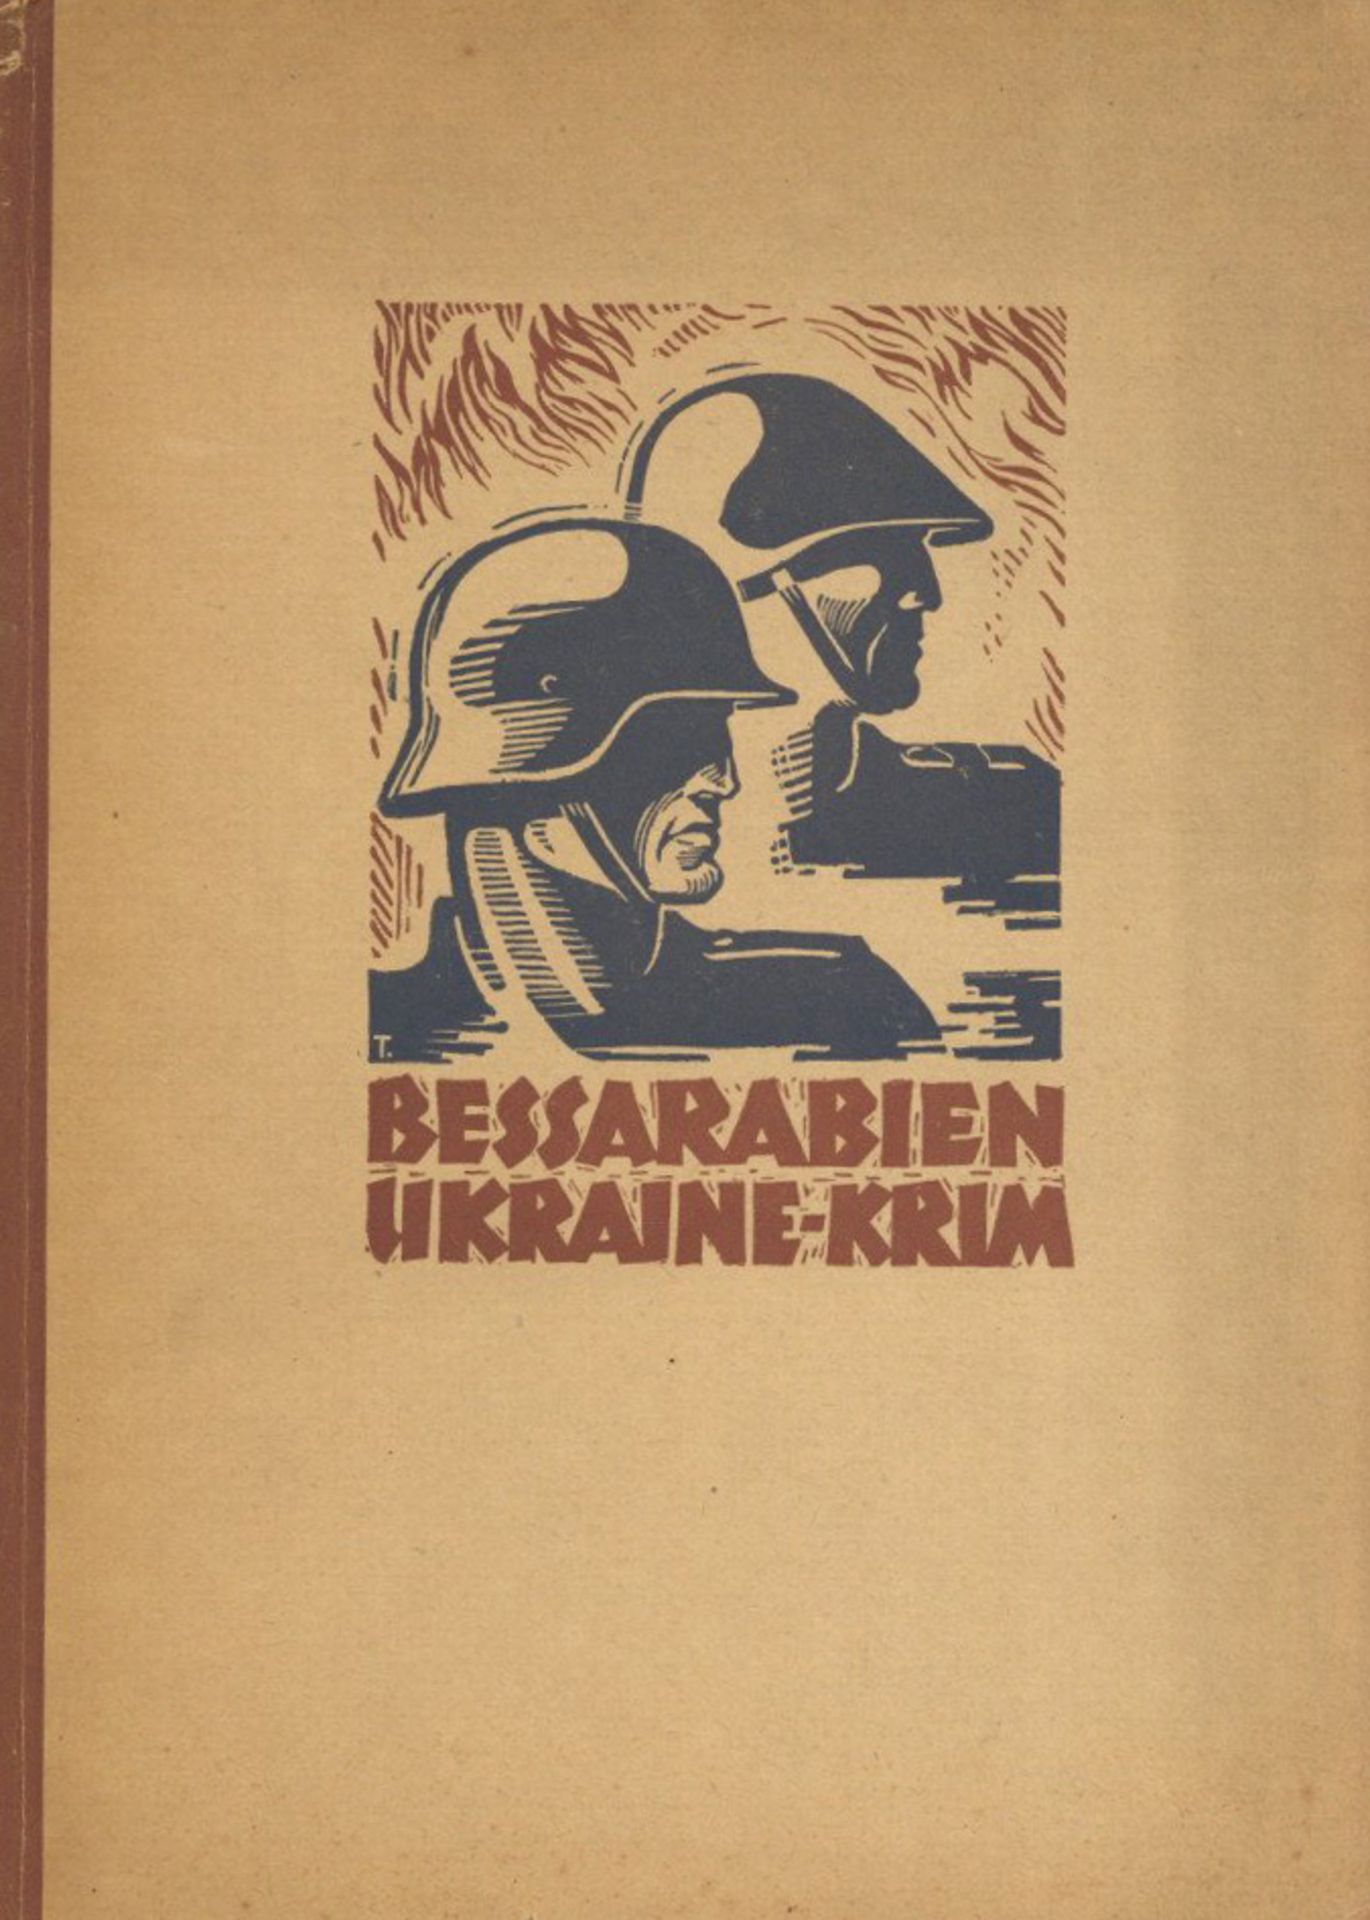 Buch WK II Bessarabien Ukraine Krim Bildband hrsg. Abt. Ic einer Ost-Armee o. Jahr Verlag Erich